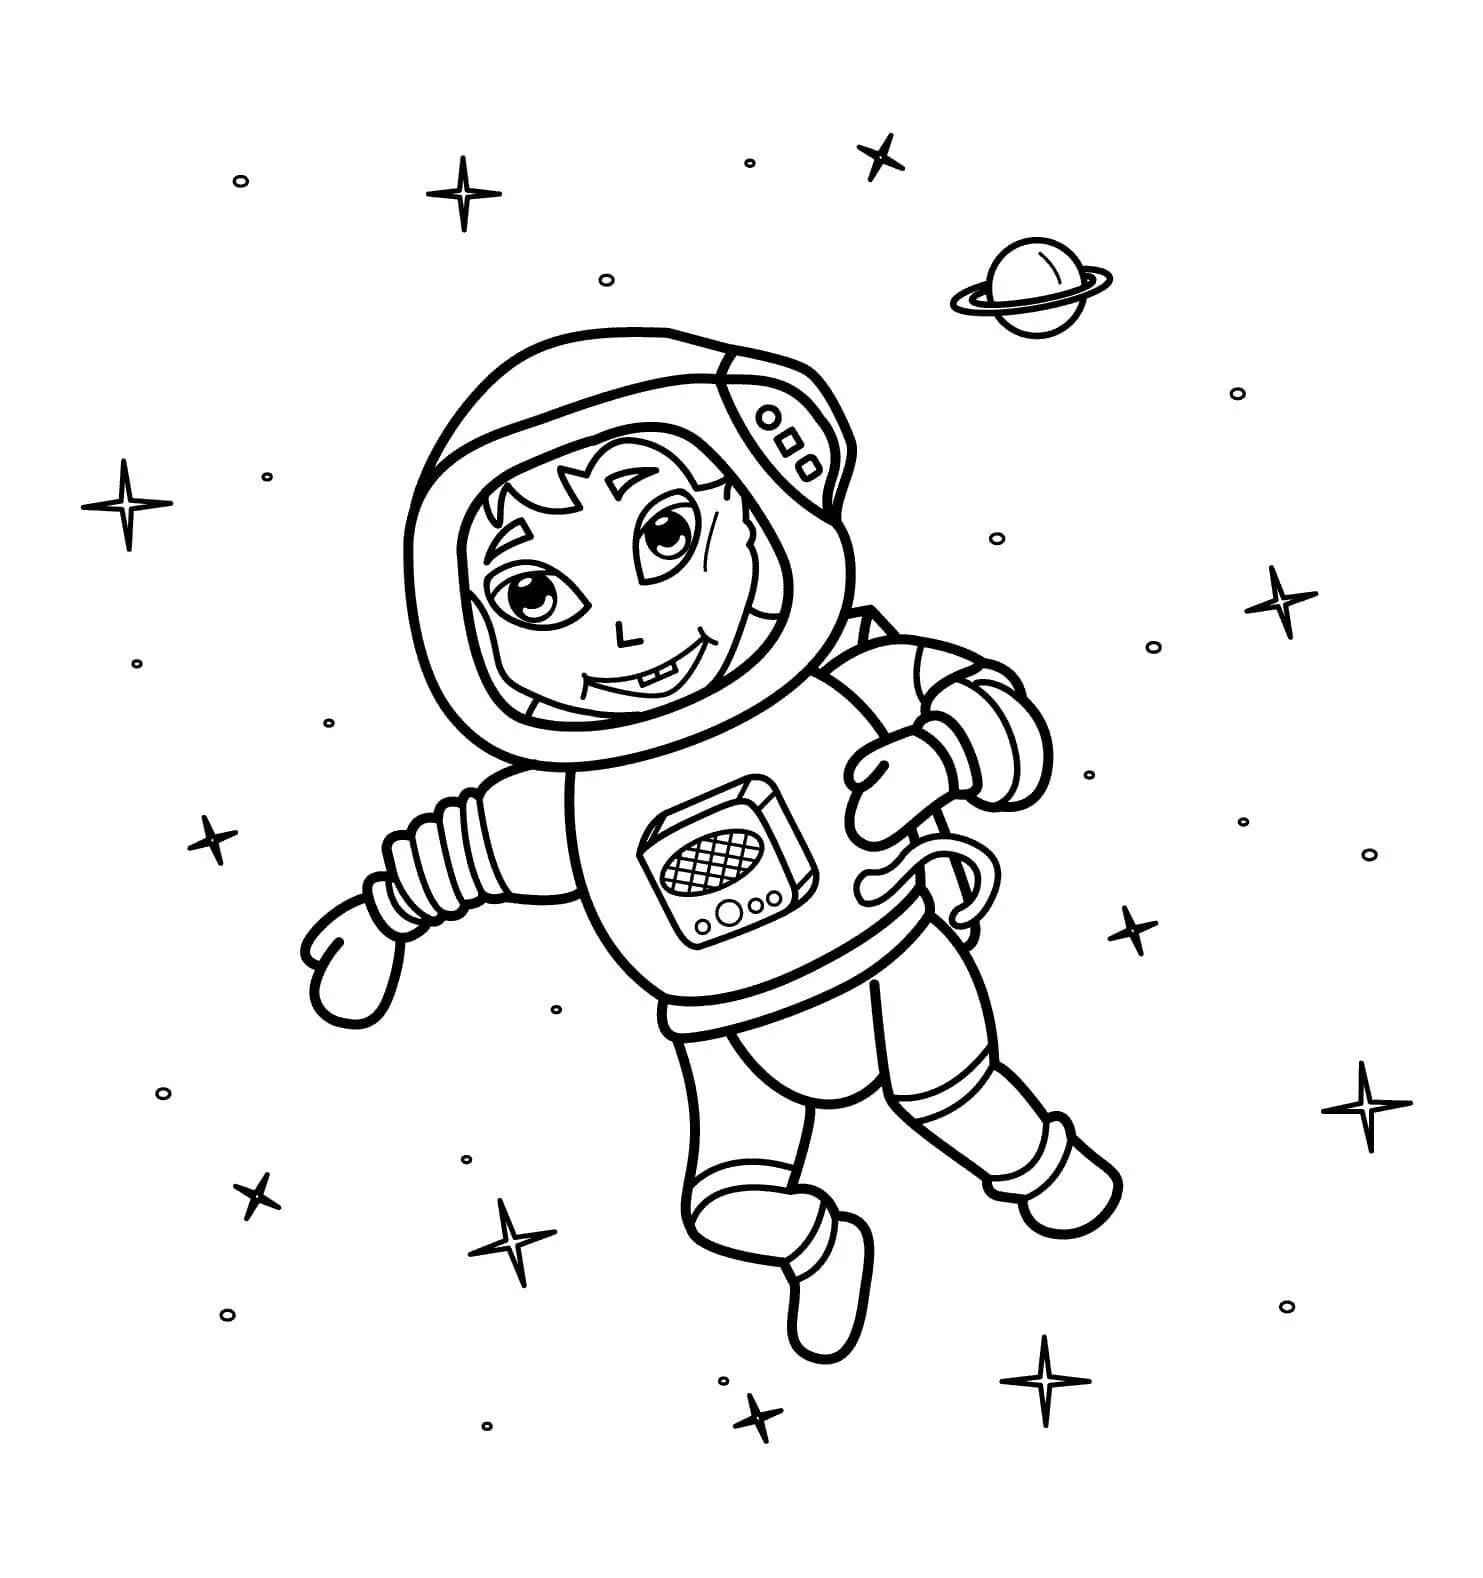 Космонавт раскраска для детей. Космос раскраска для детей. Раскраска про космос и Космонавтов для детей. Космонавт для раскрашивания для детей. Космонавт шаблон для вырезания распечатать